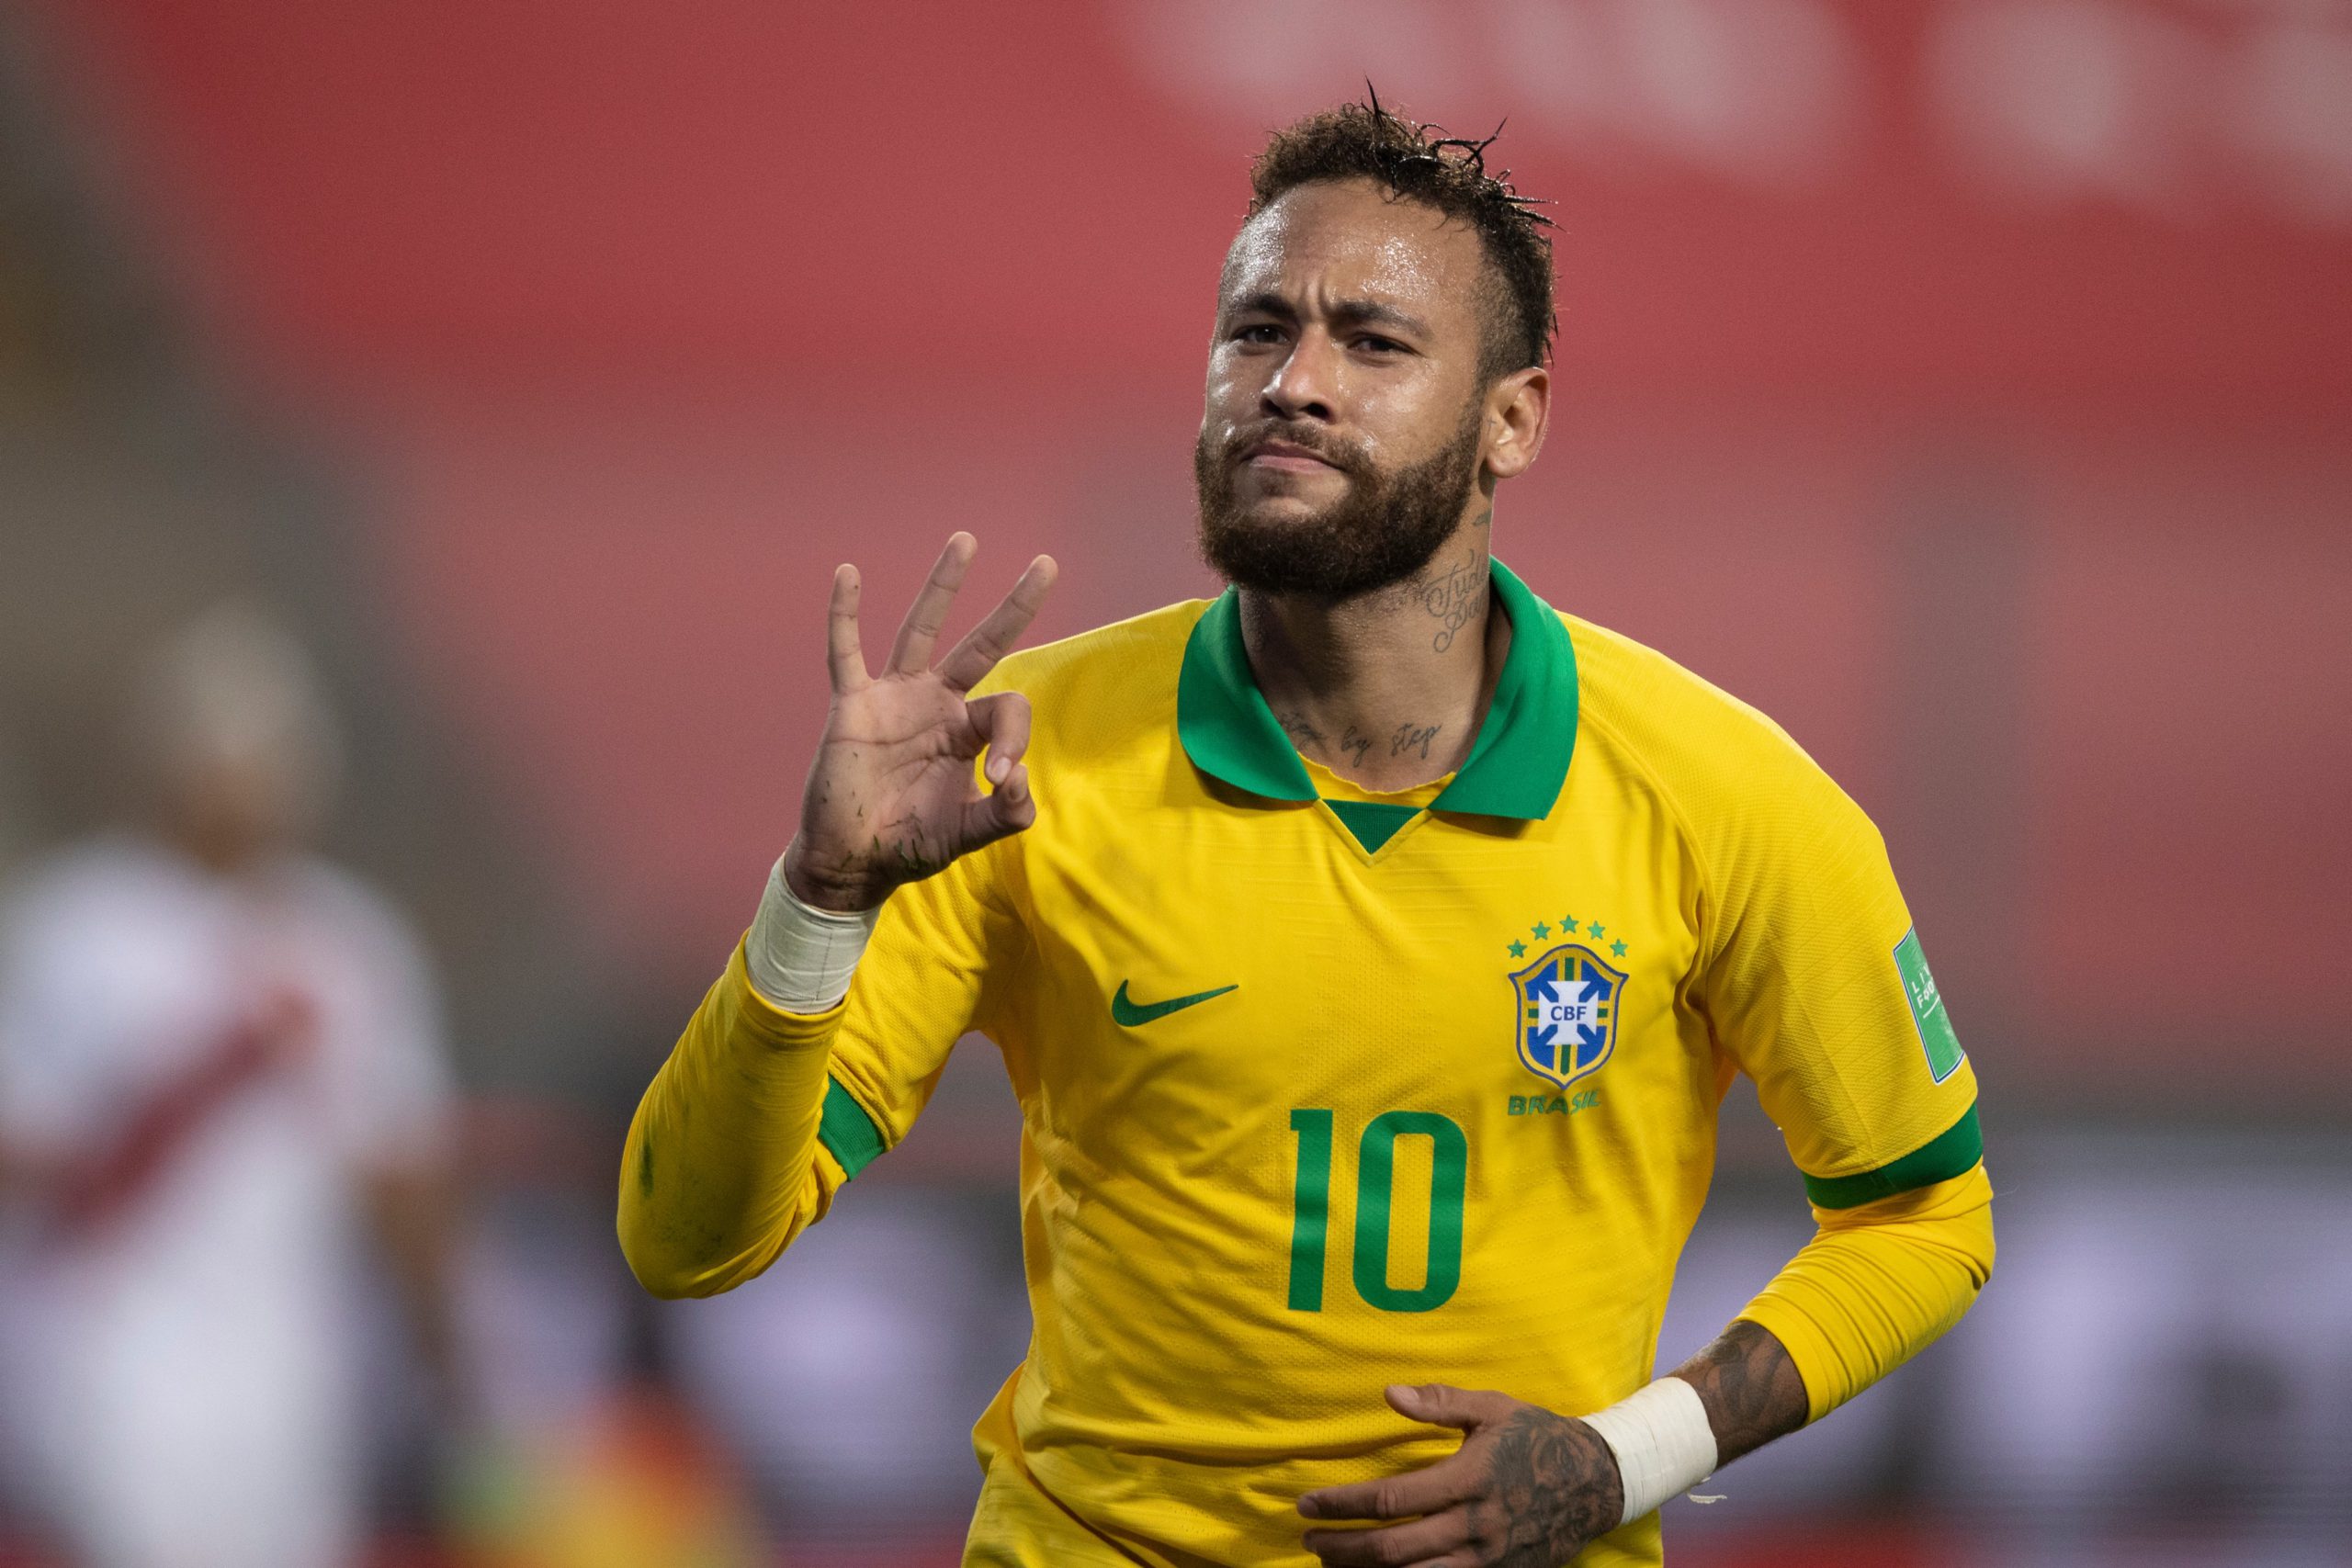 Seleção brasileira destrona Bélgica no ranking da FIFA e faz história